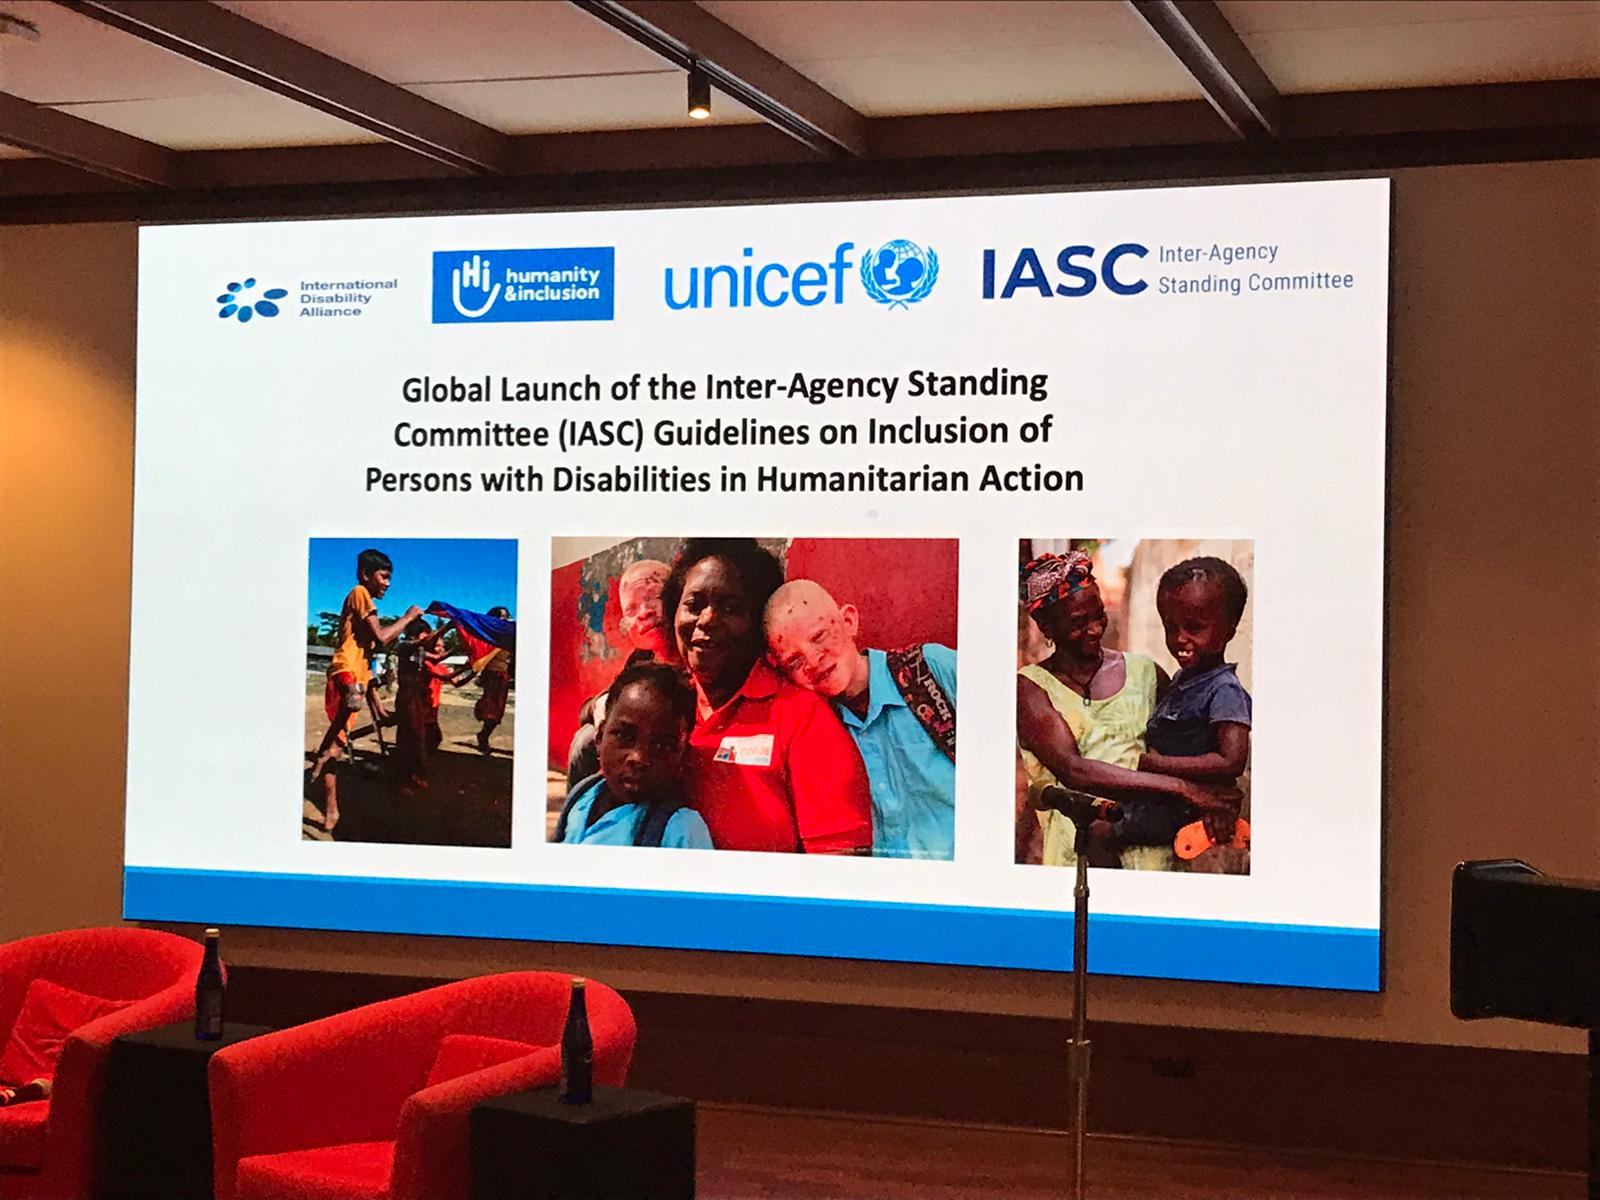 Globaler Launch der IASC-Leitlinien in New York (November, 2019). Veranstaltungsraum mit dem Backdrop der Veranstaltung.